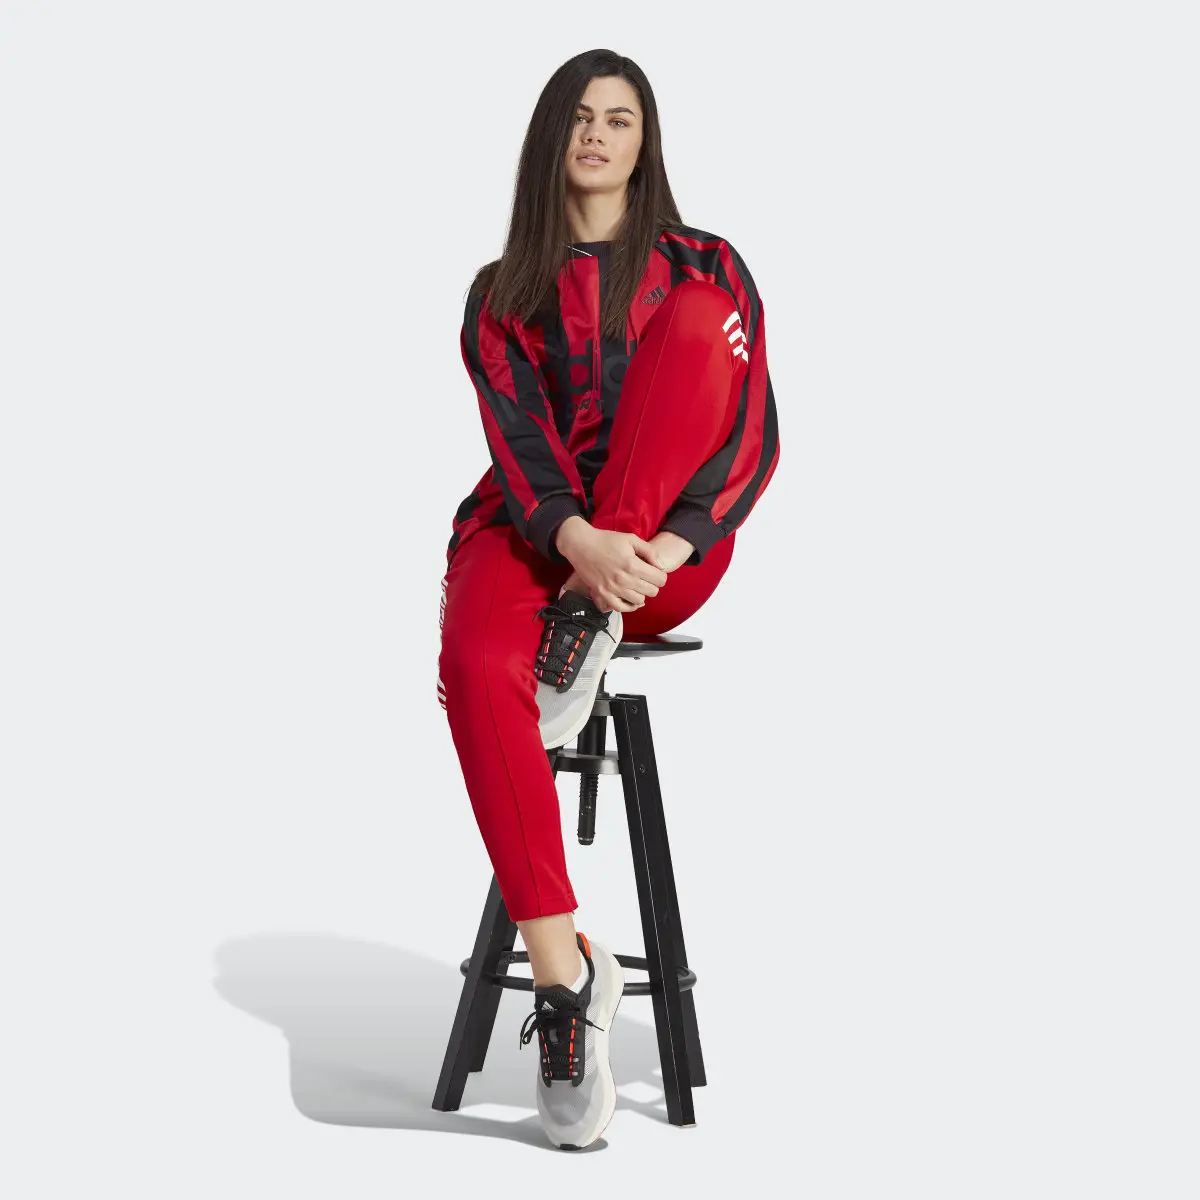 Adidas Tiro Suit Up Lifestyle Track Pant. 3